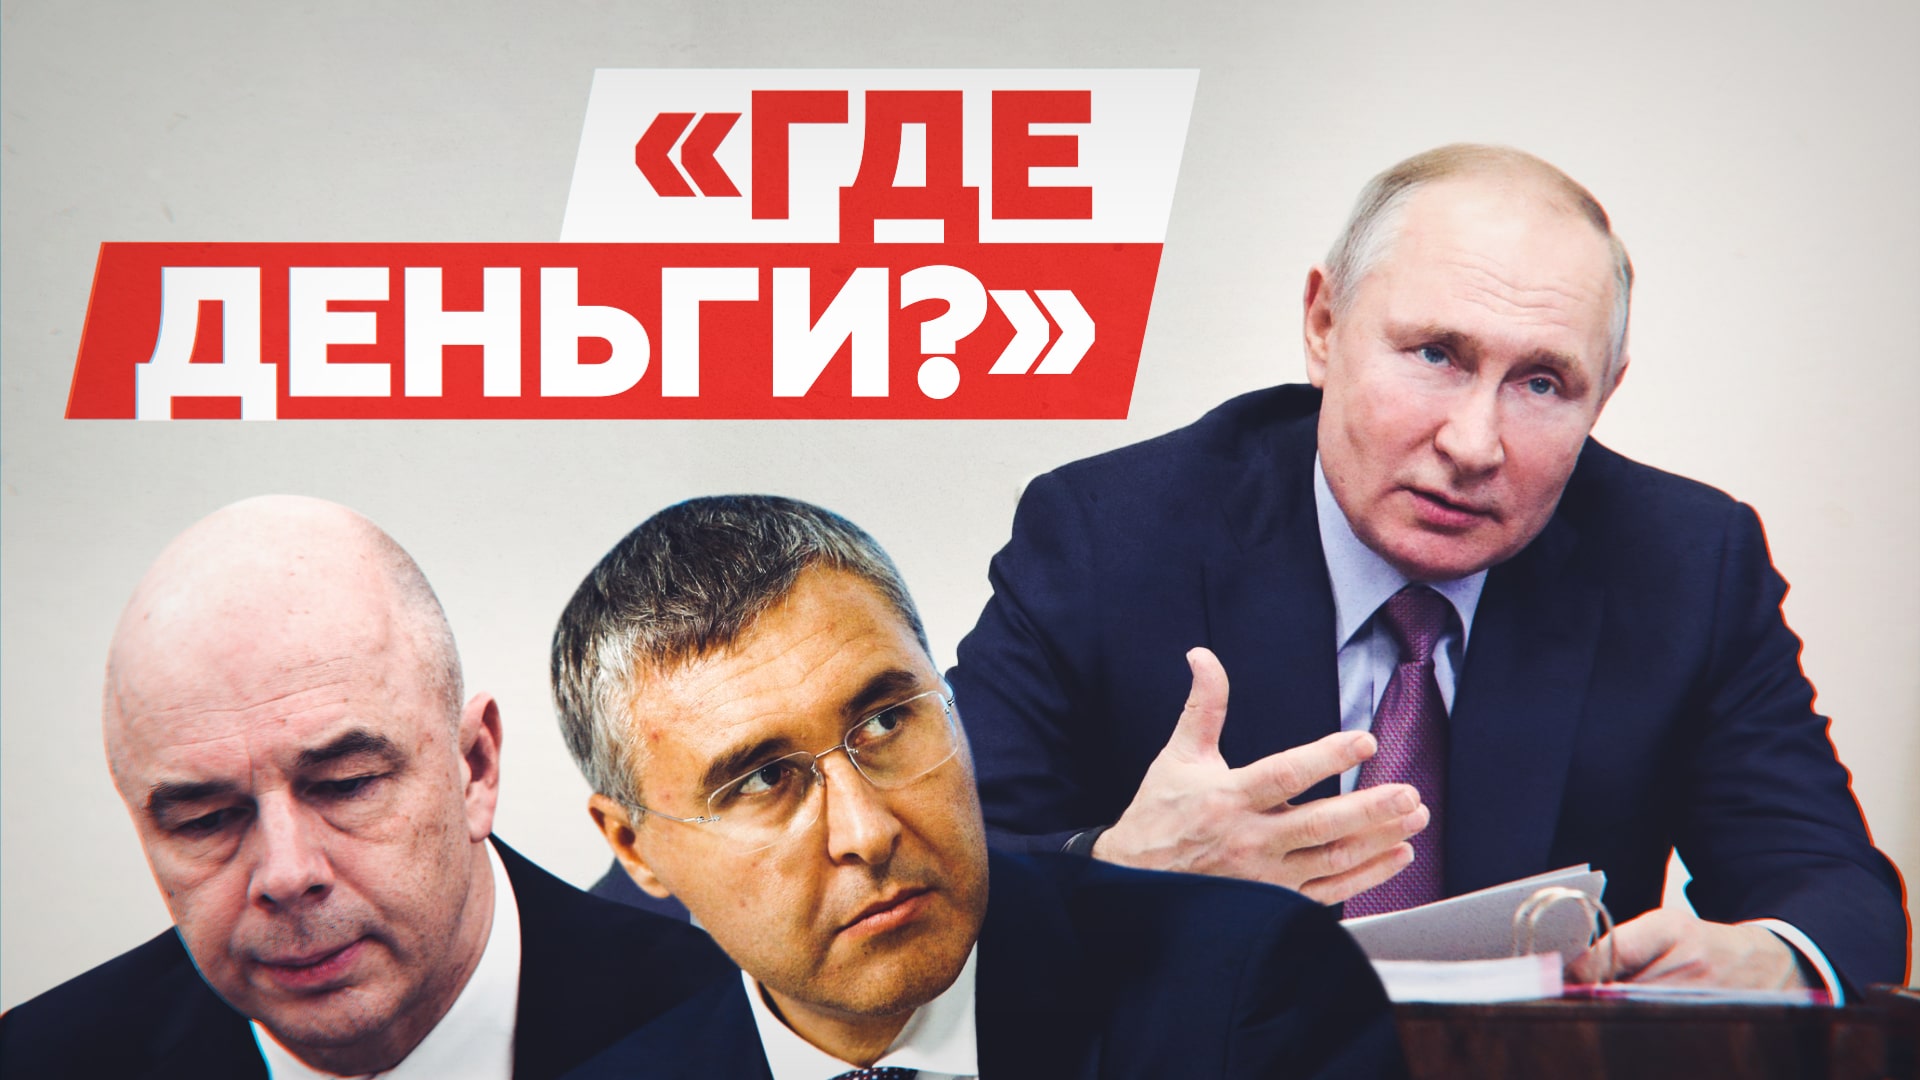 «Где деньги, Зин?»: Путин поручил проверить исполнение указа о повышении зарплат учёных